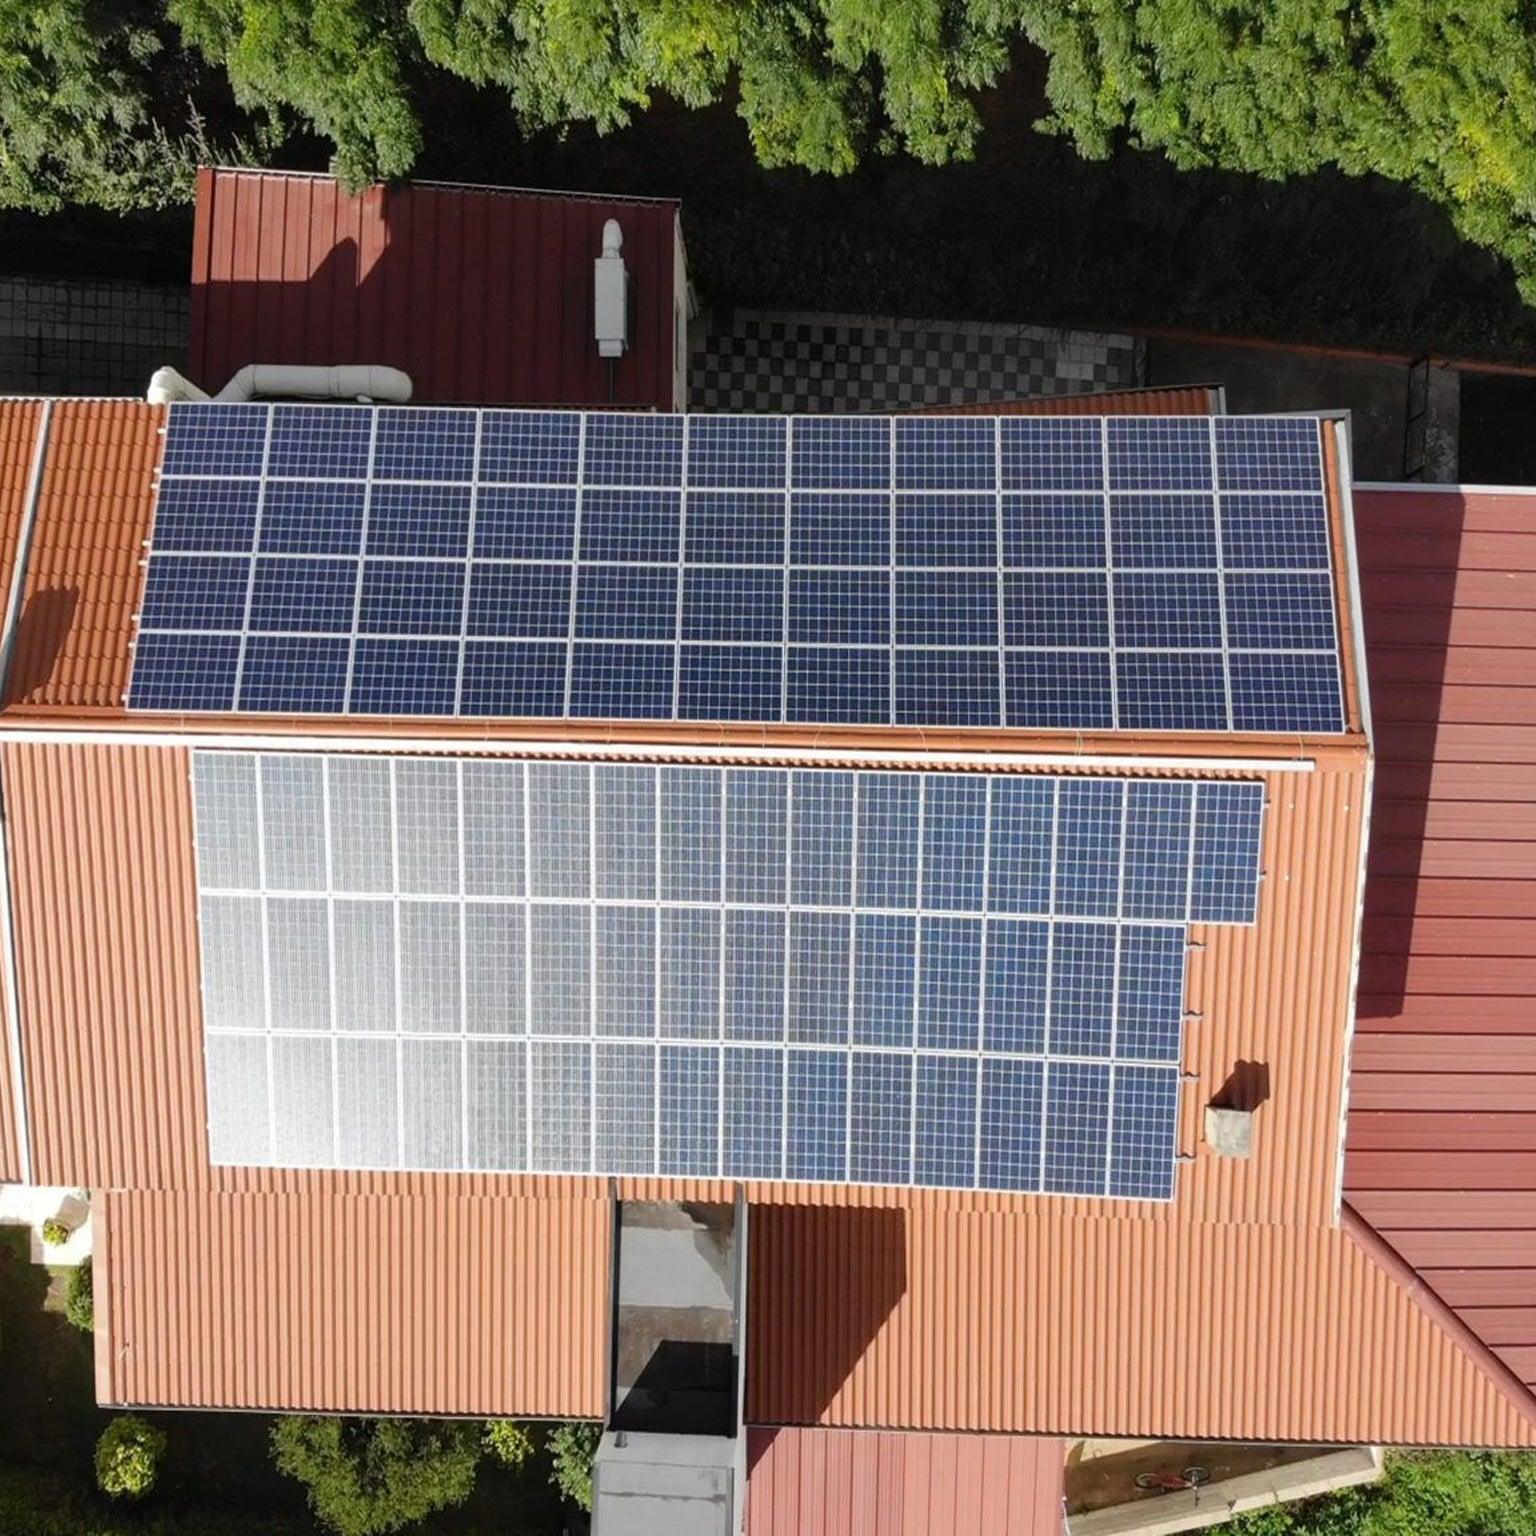 Portrait Orientation - Easy Plan Tile Roof Hooks With Rails For Solar Panels - VoltaconSolar